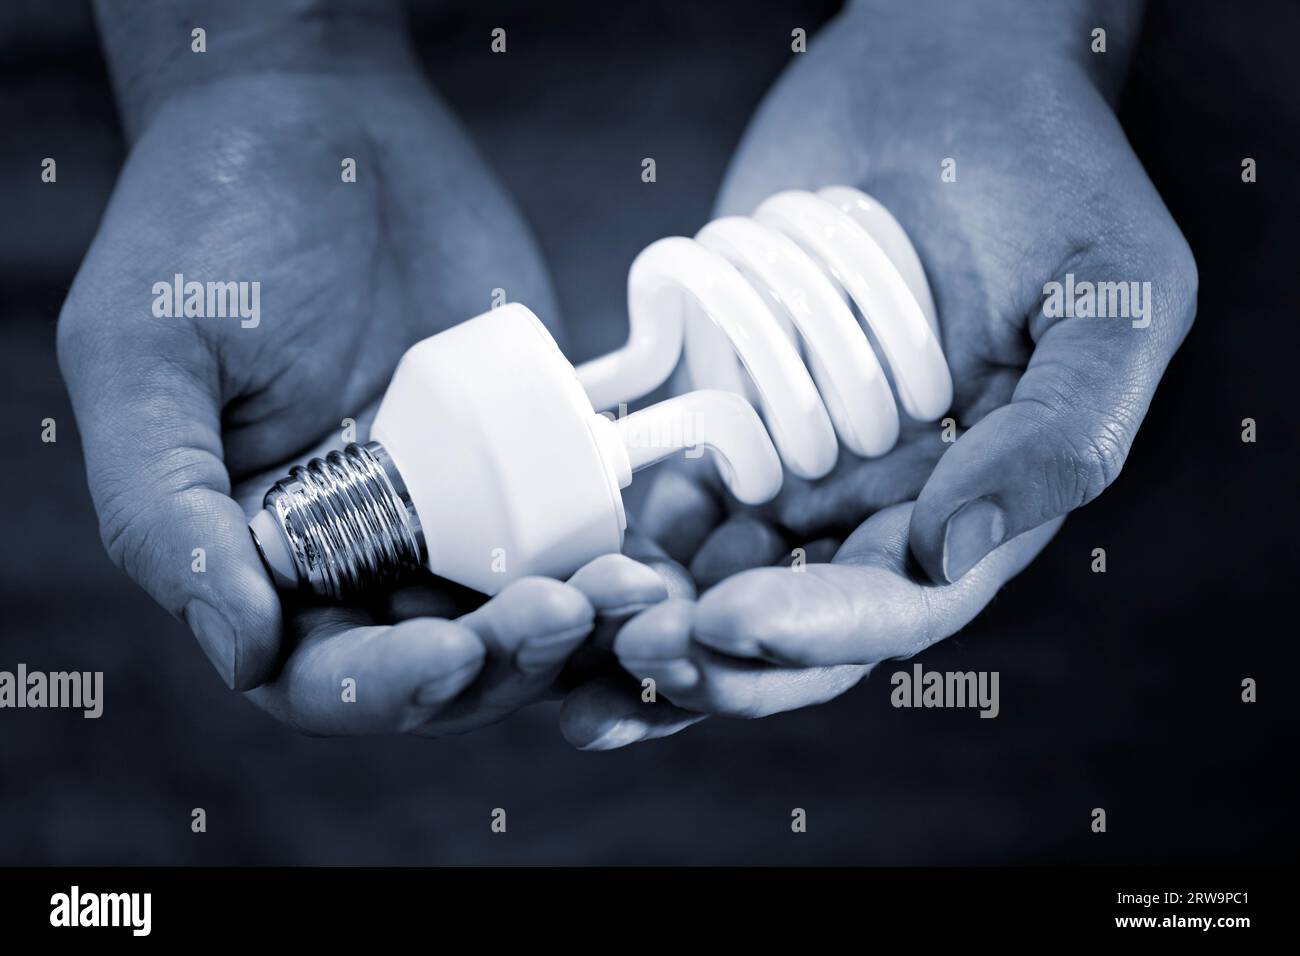 Immagine monocromatica blu delle mani con una lampadina fluorescente compatta. Profondità di campo molto breve Foto Stock